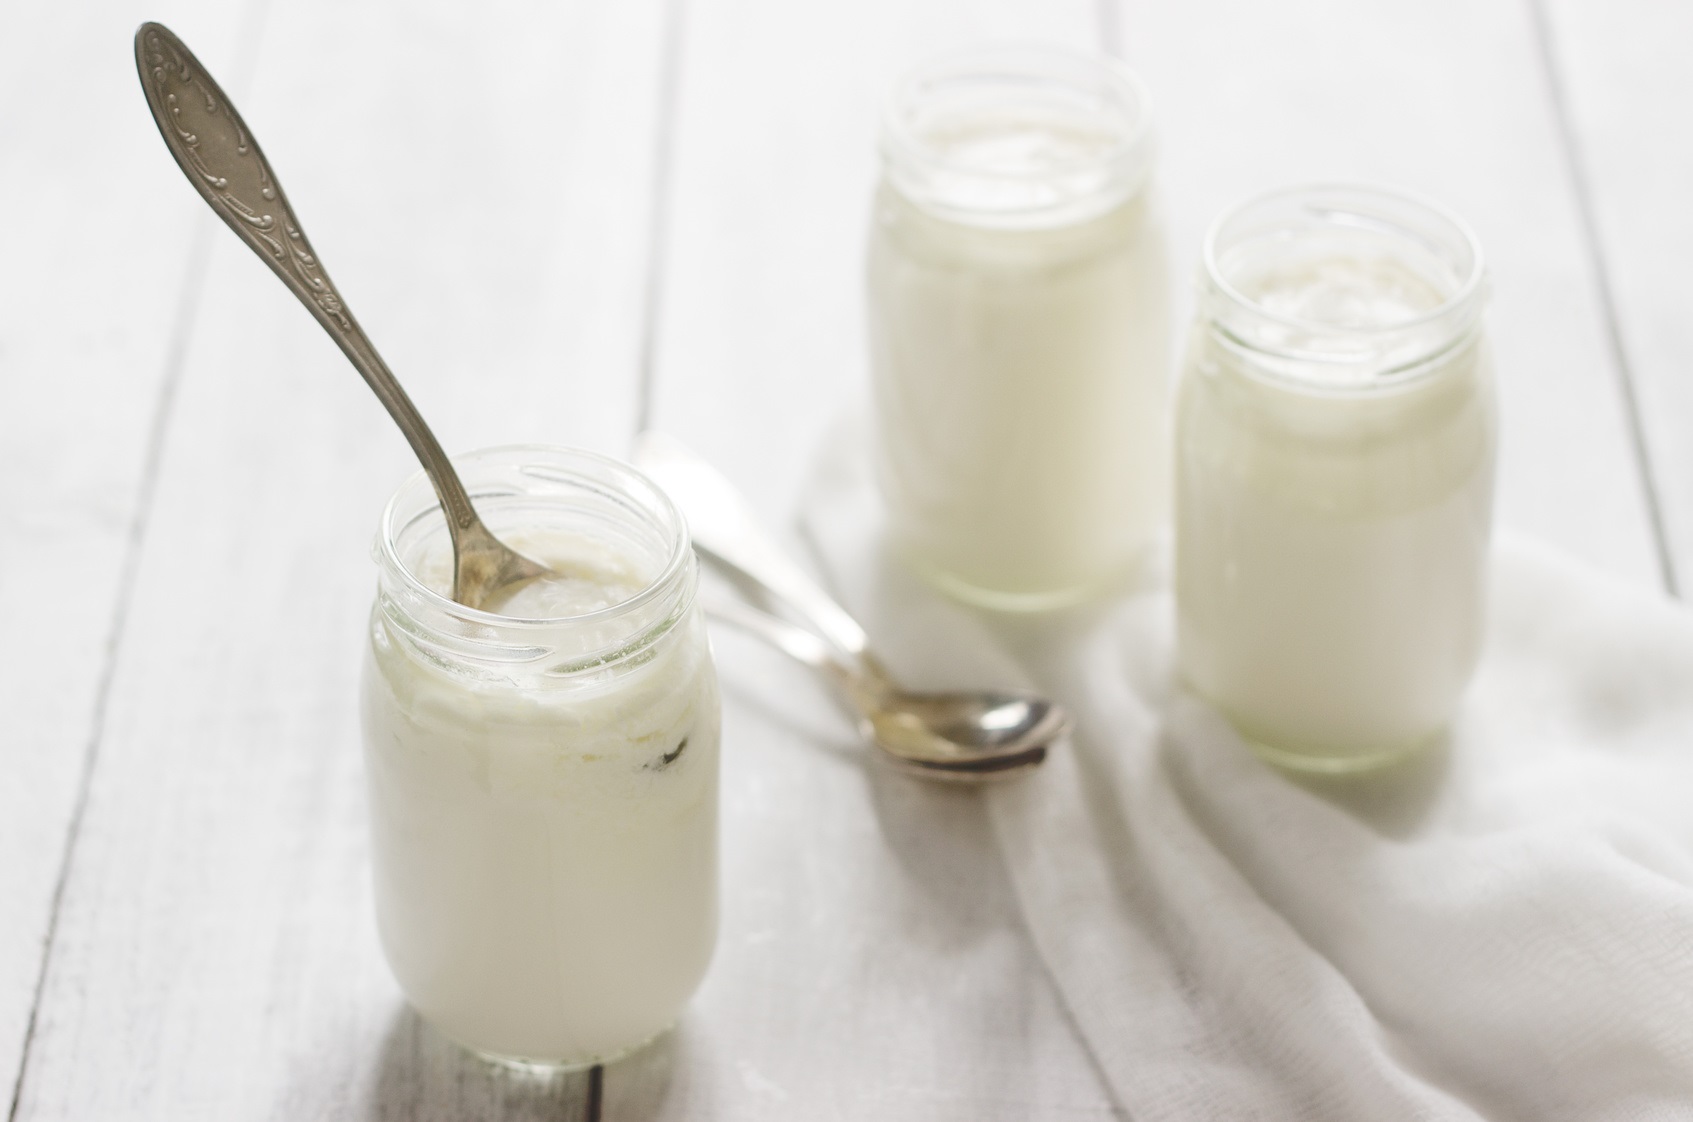 Dans les produits laitiers comme le yaourts, des bactéries réalisent la fermentation lactique. © Janna, Fotolia